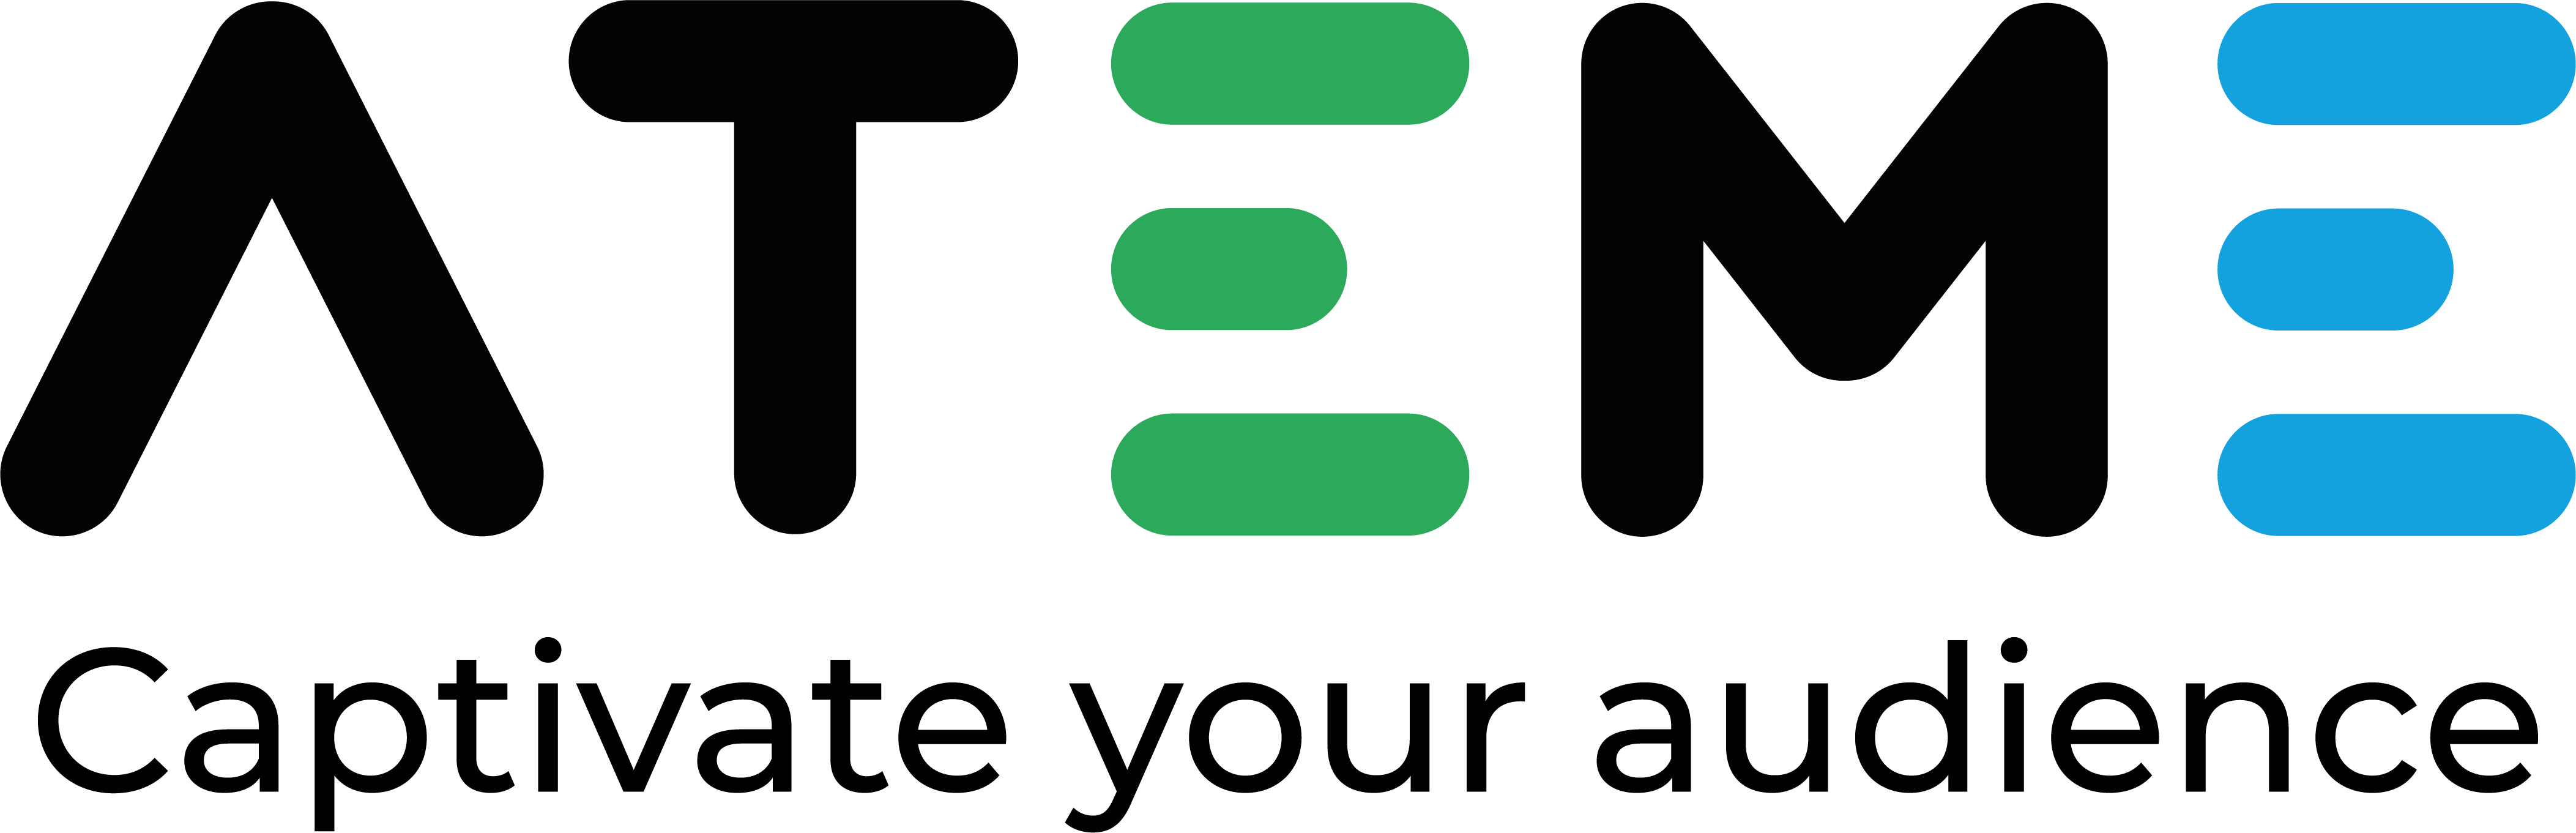 Logo for ATEME